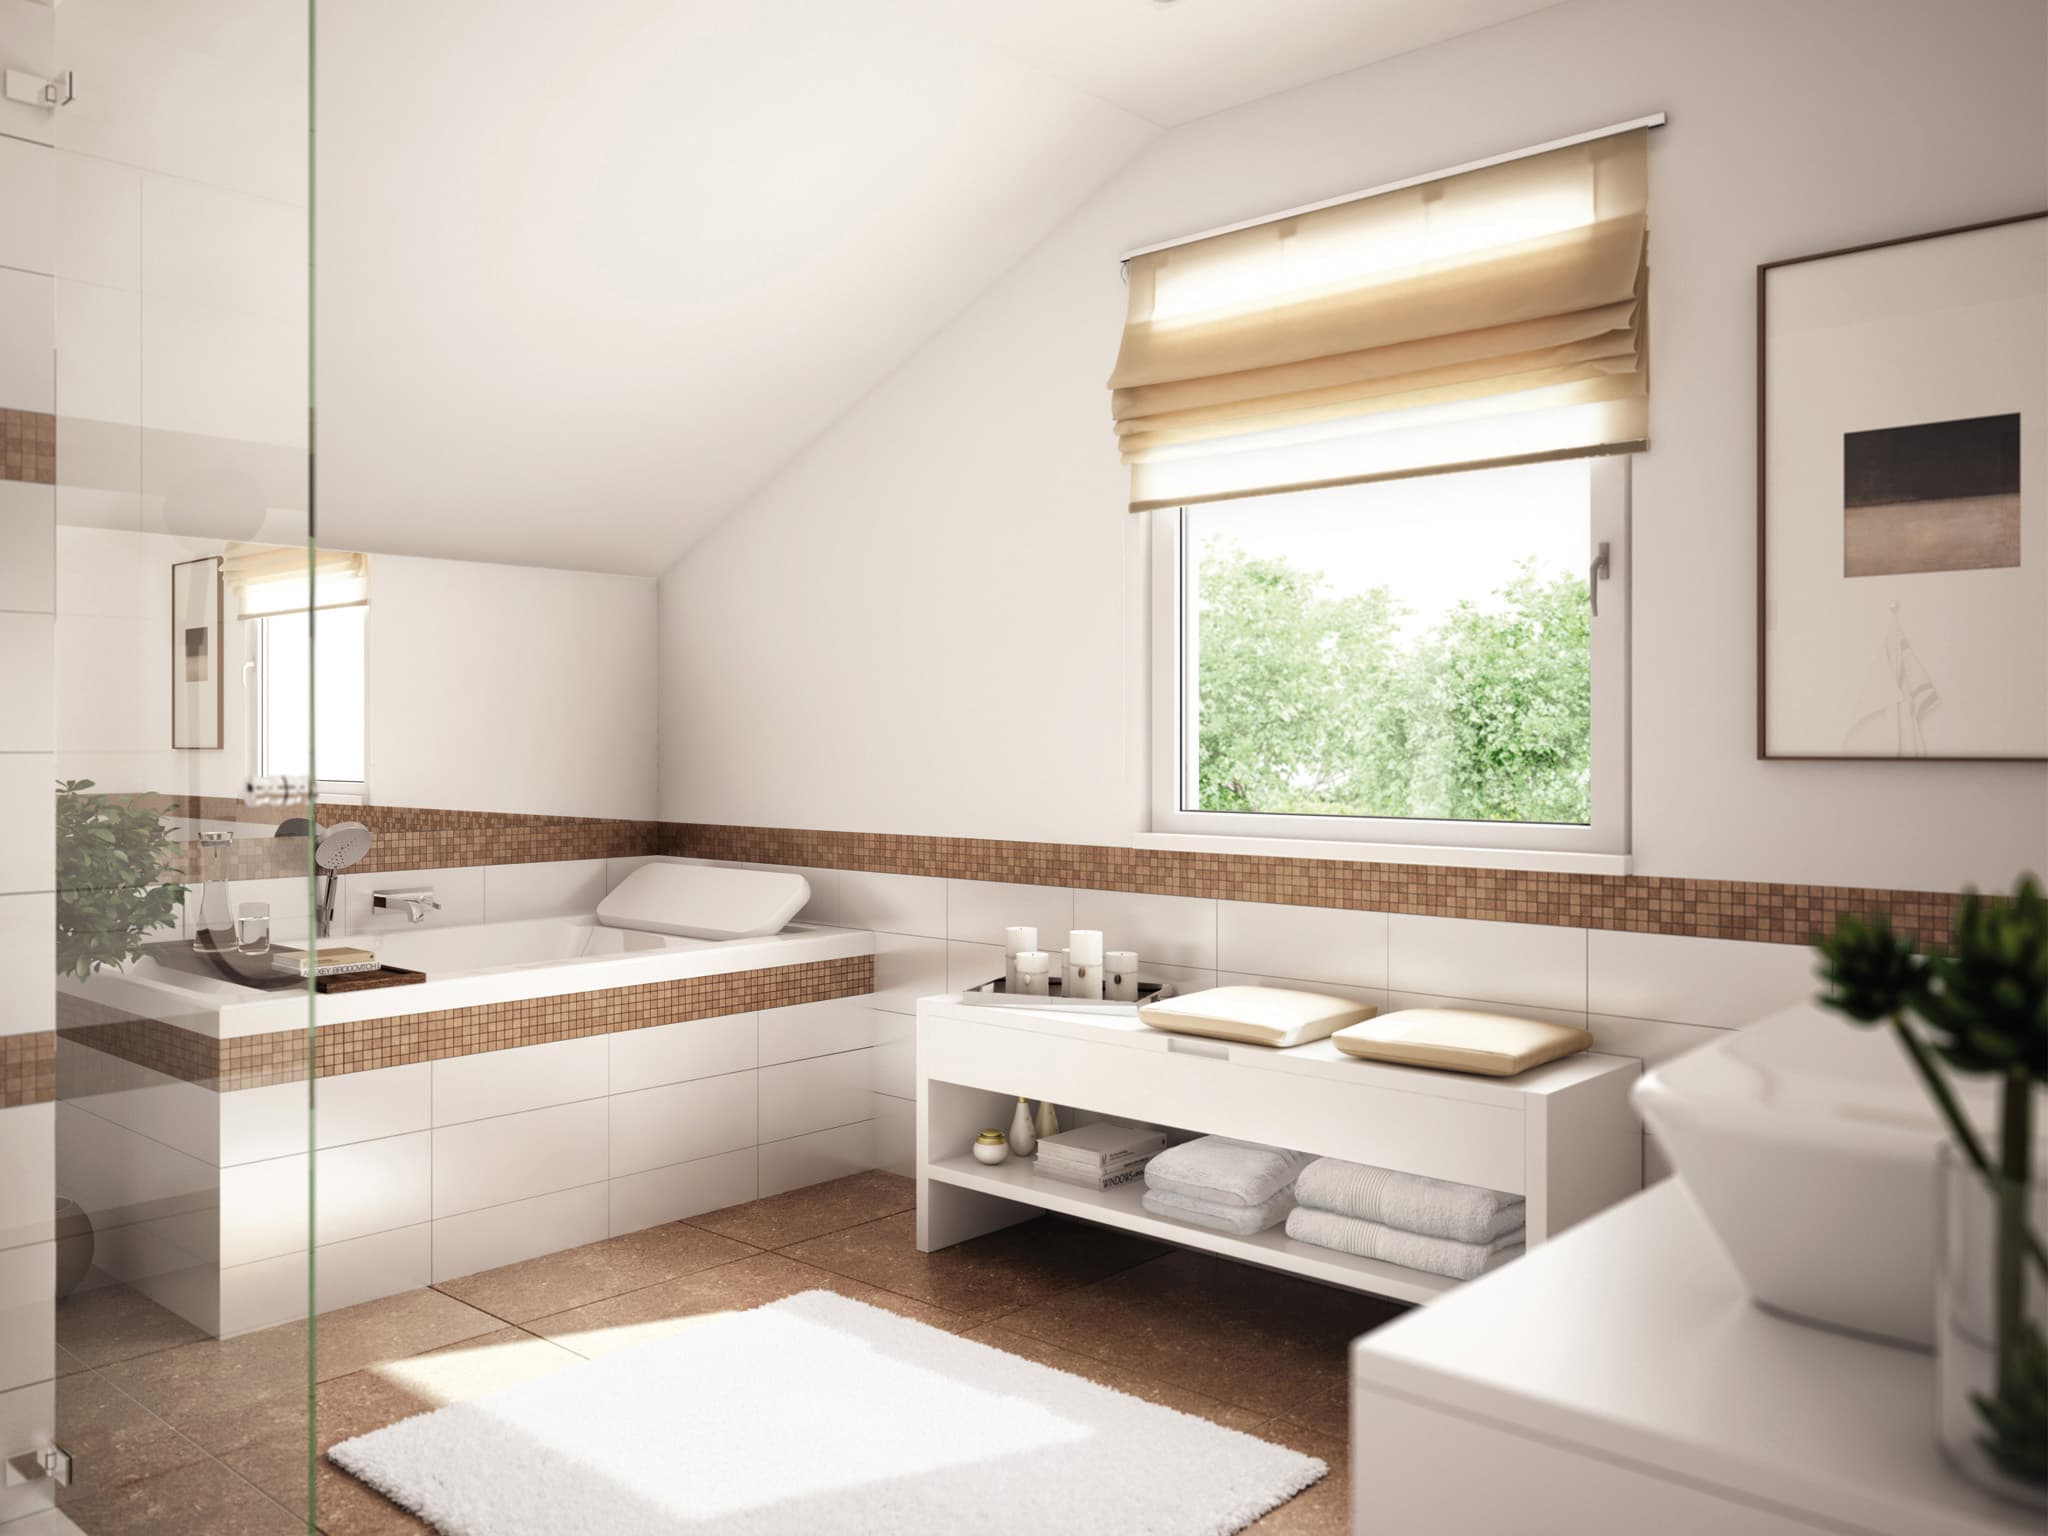 Badezimmer Ideen - Inneneinrichtung Fertighaus Living Haus SUNSHINE 151 V5 - HausbauDirekt.de